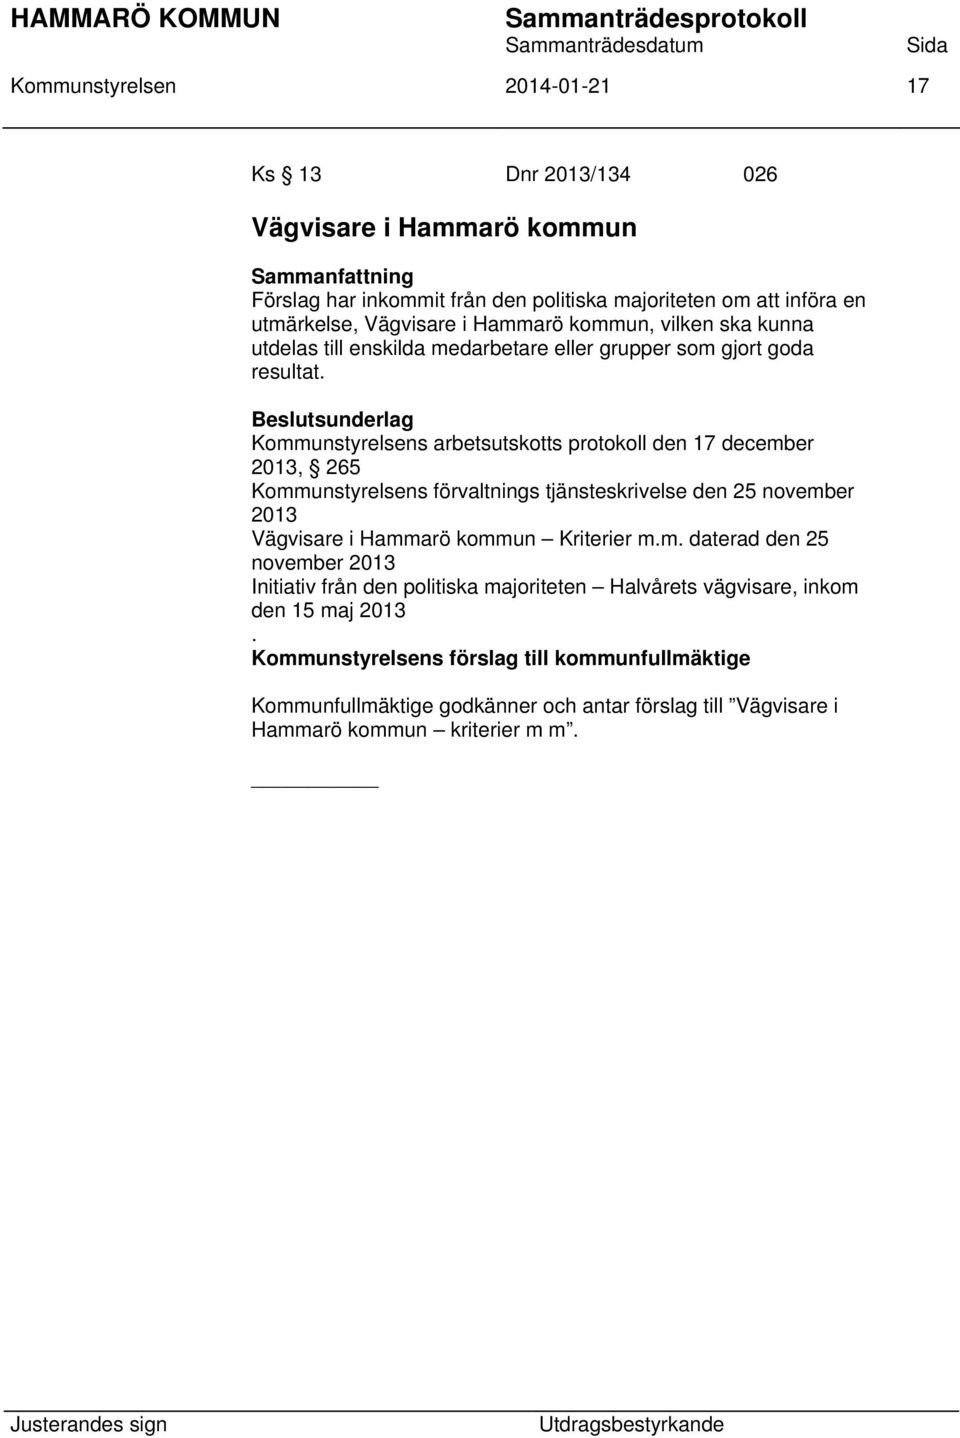 Kommunstyrelsens arbetsutskotts protokoll den 17 december 2013, 265 Kommunstyrelsens förvaltnings tjänsteskrivelse den 25 november 2013 Vägvisare i Hammarö kommun Kriterier m.m. daterad den 25 november 2013 Initiativ från den politiska majoriteten Halvårets vägvisare, inkom den 15 maj 2013.